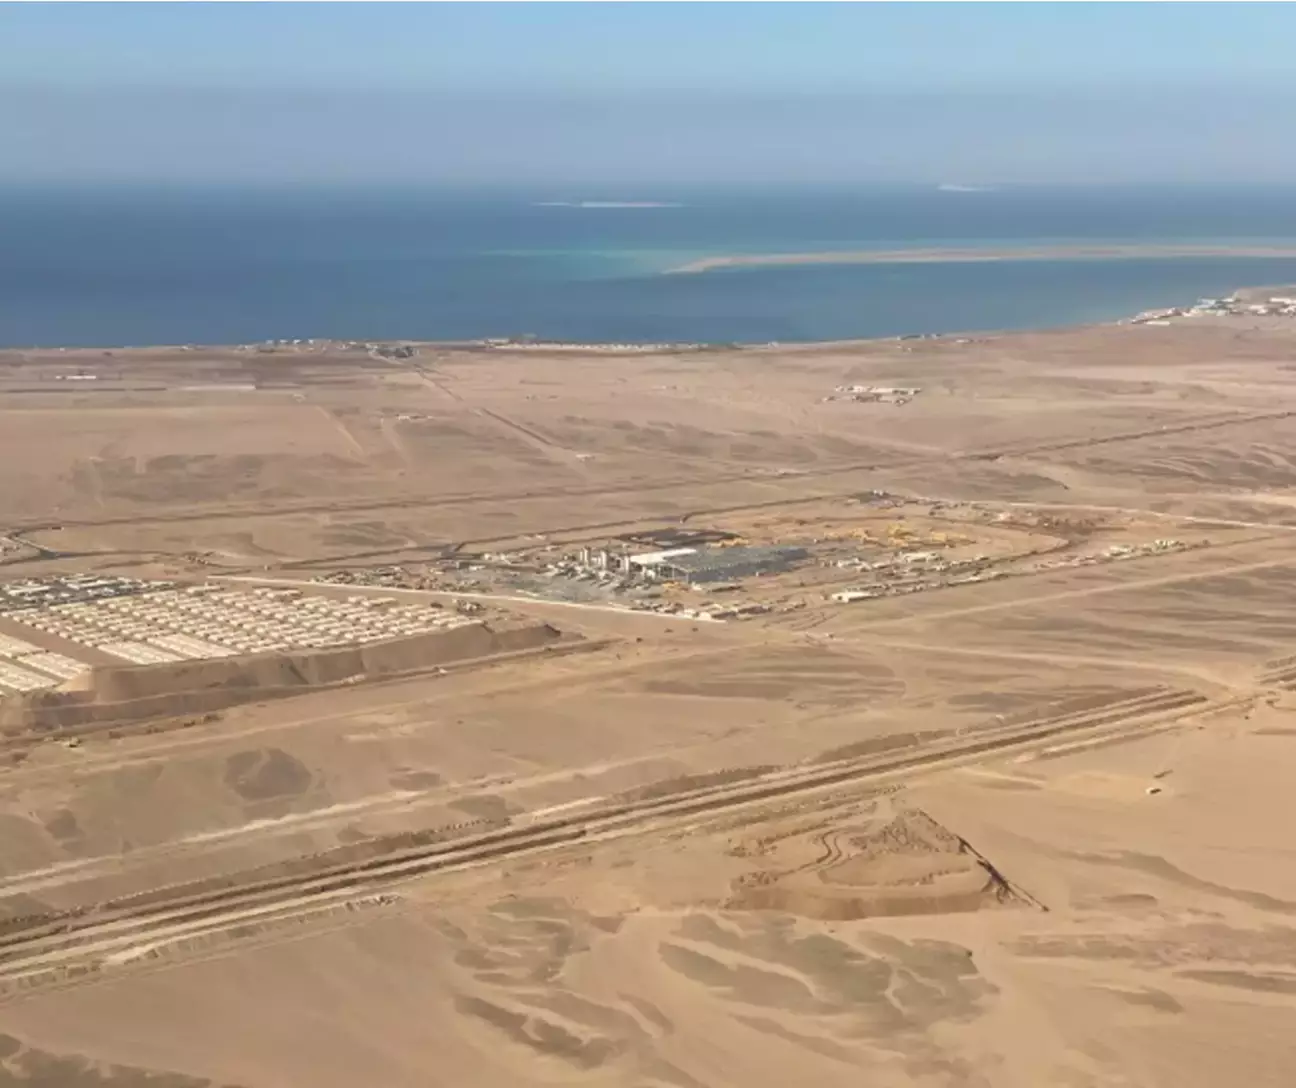 Imagens aéreas mostram o progresso insano e a escala da "cidade linear" de US$ 1 trilhão da Arábia Saudita